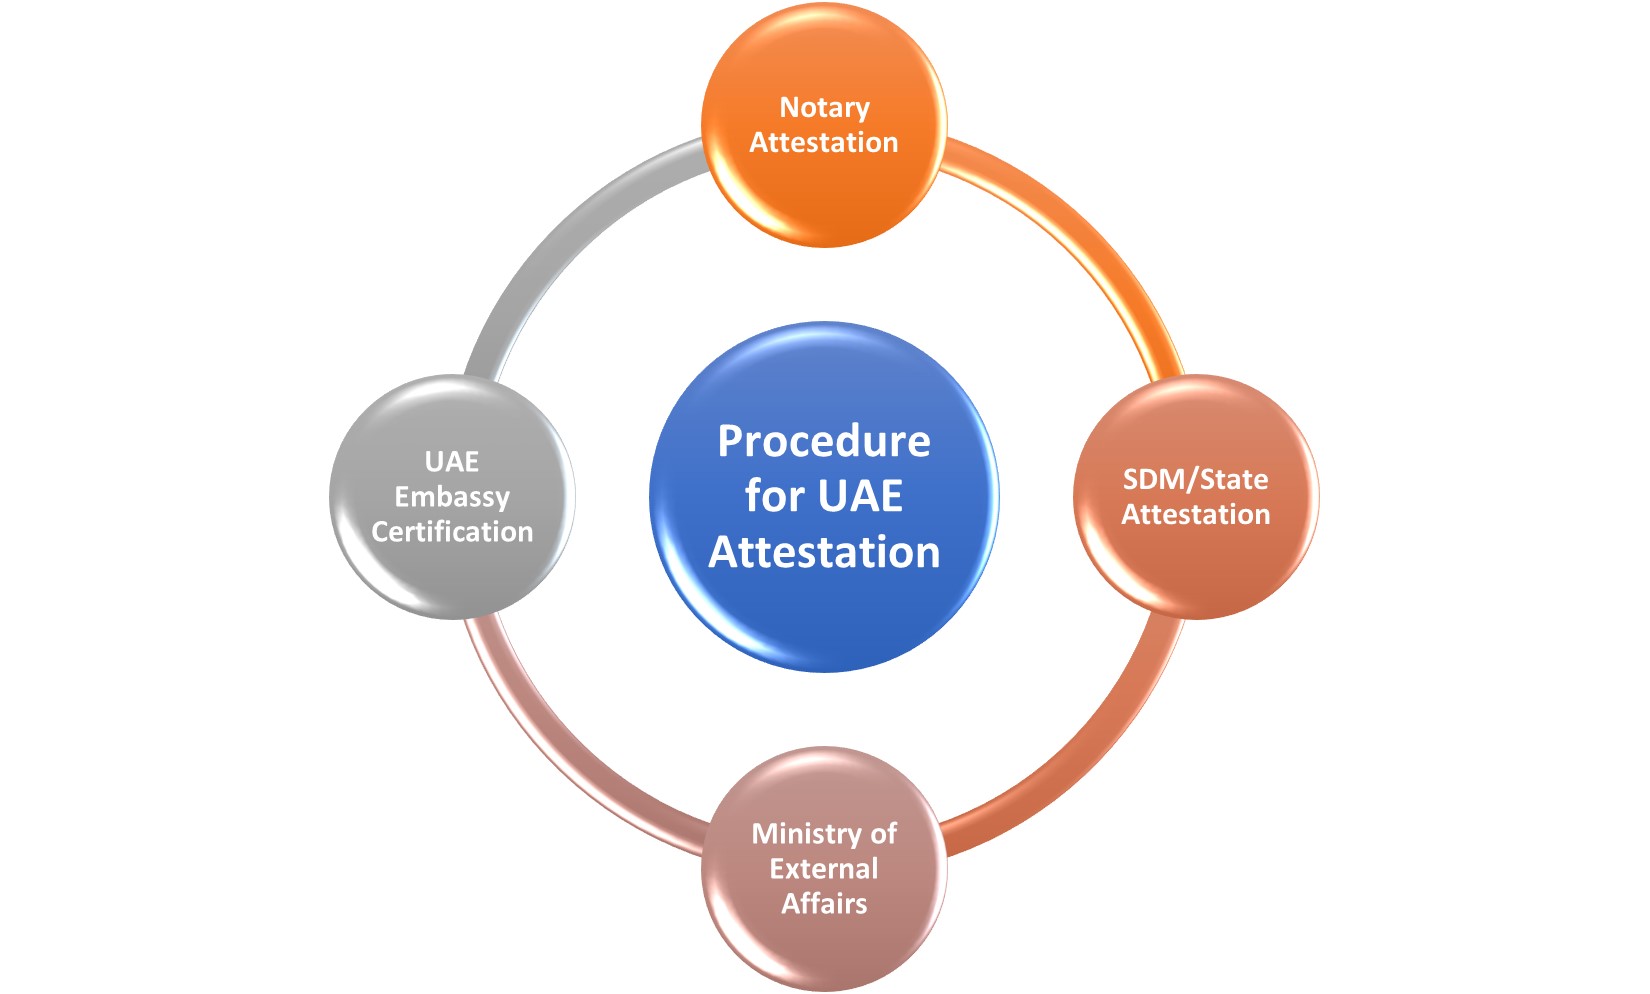 Procedure for UAE Attestation